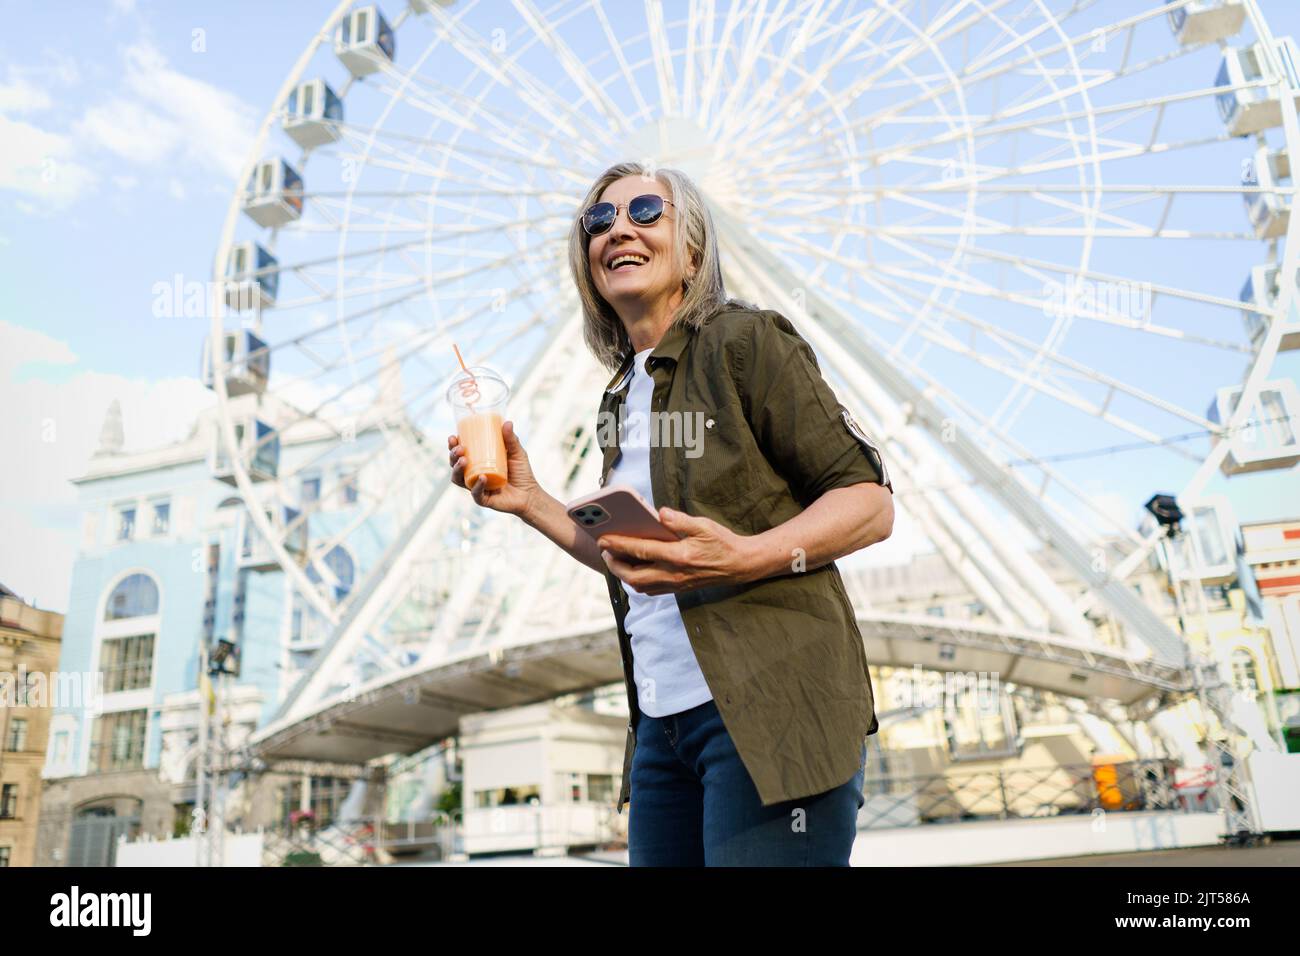 Fröhliche, grauhaarige europäische Frau, die gerne reist, hält Telefon, Smartphone, während sie unterwegs mit einer Plastikschale, Sonnenbrille und grünem Hemd in der Stadt Saft trinkt und auf dem Hintergrund ein Riesenrad hat. Stockfoto